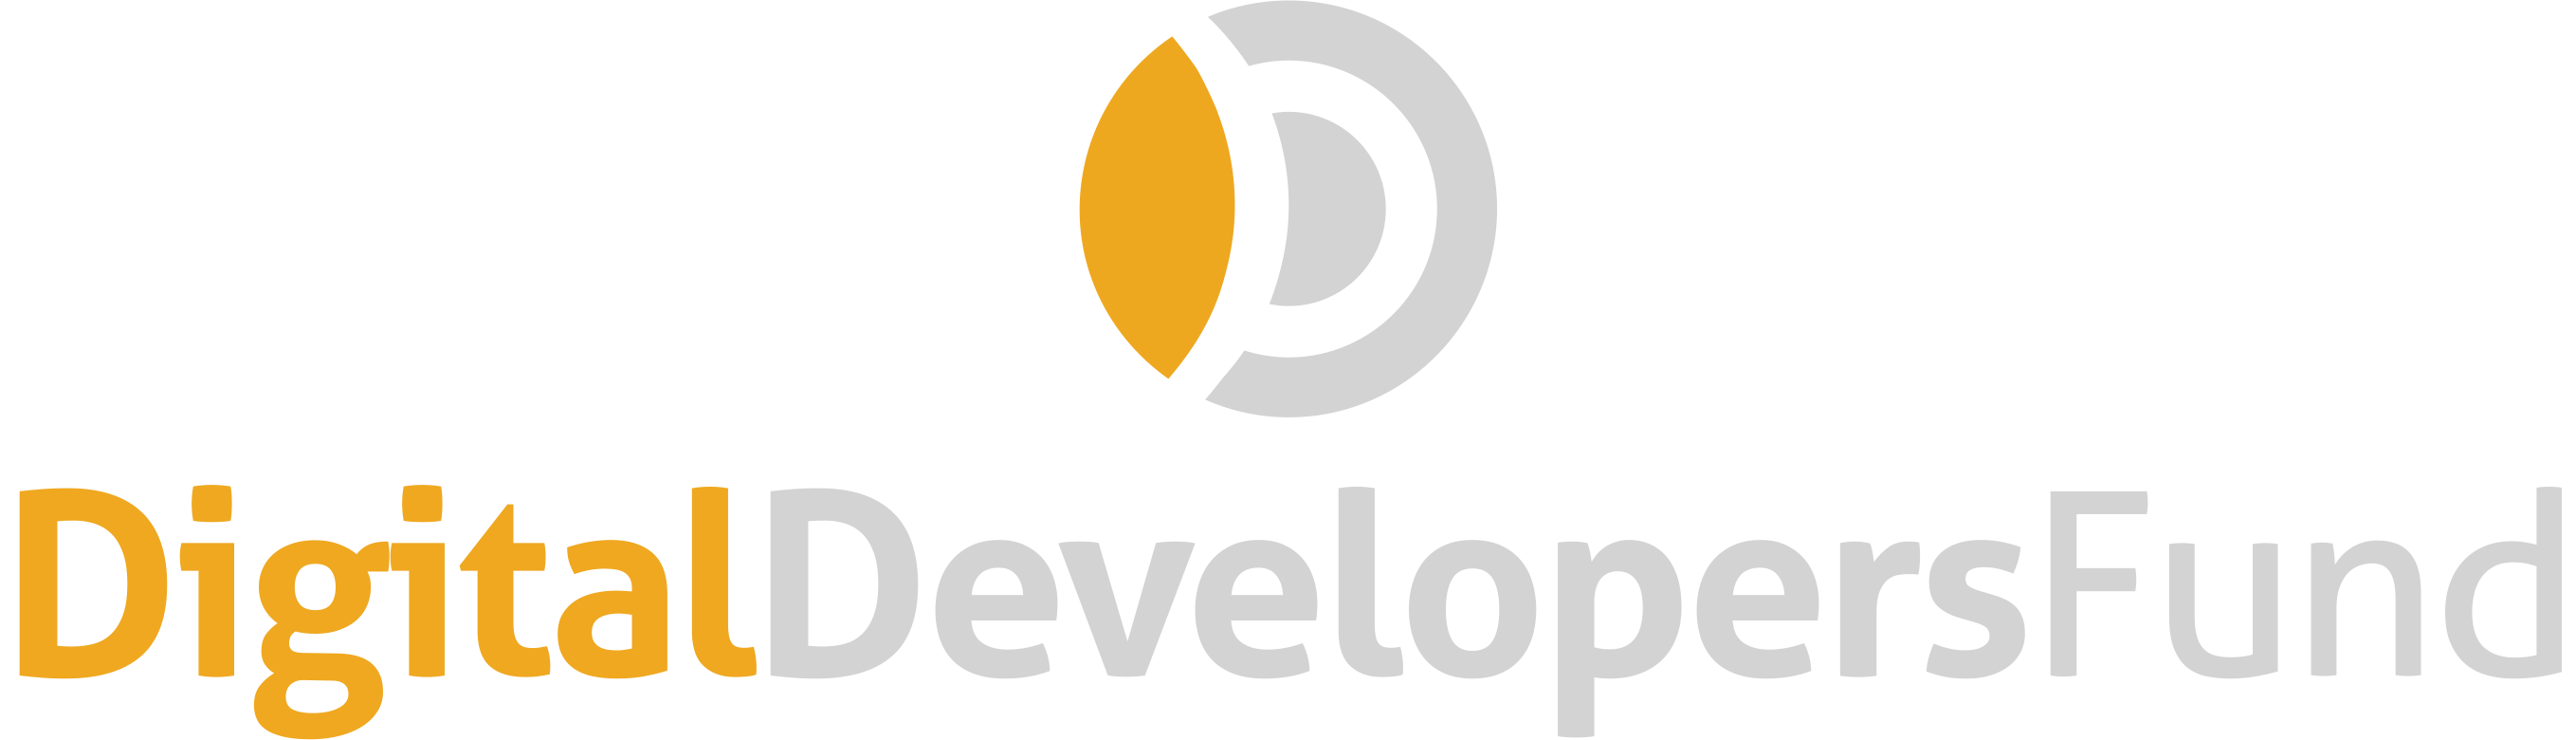 logo-big-inverted.png